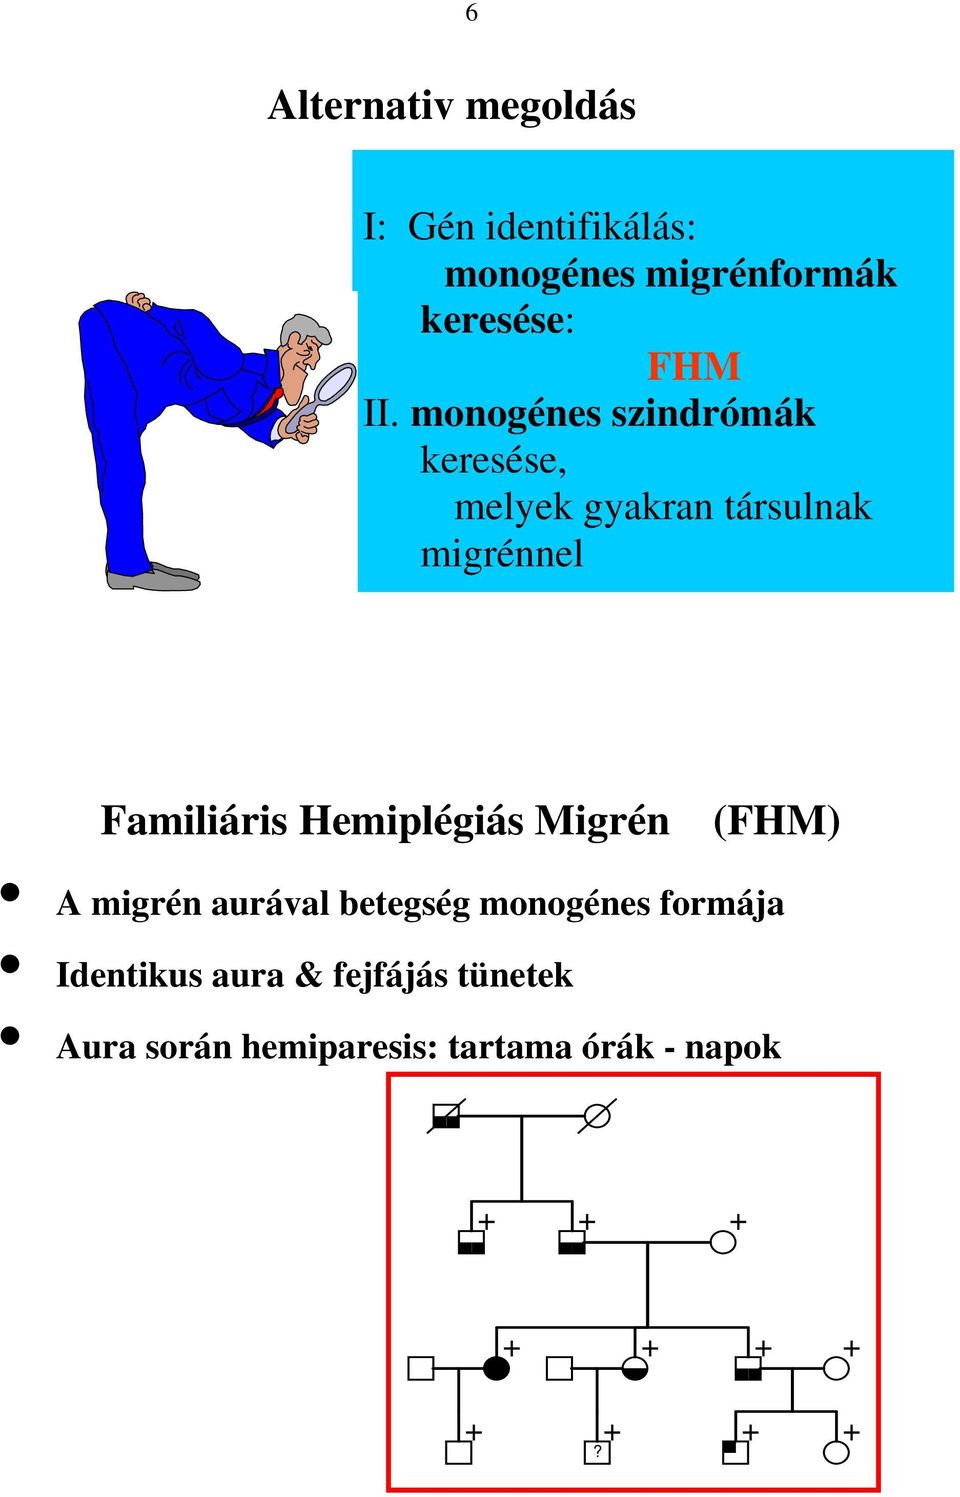 Hemiplégiás Migrén (FHM) A migrén aurával betegség monogénes formája Identikus